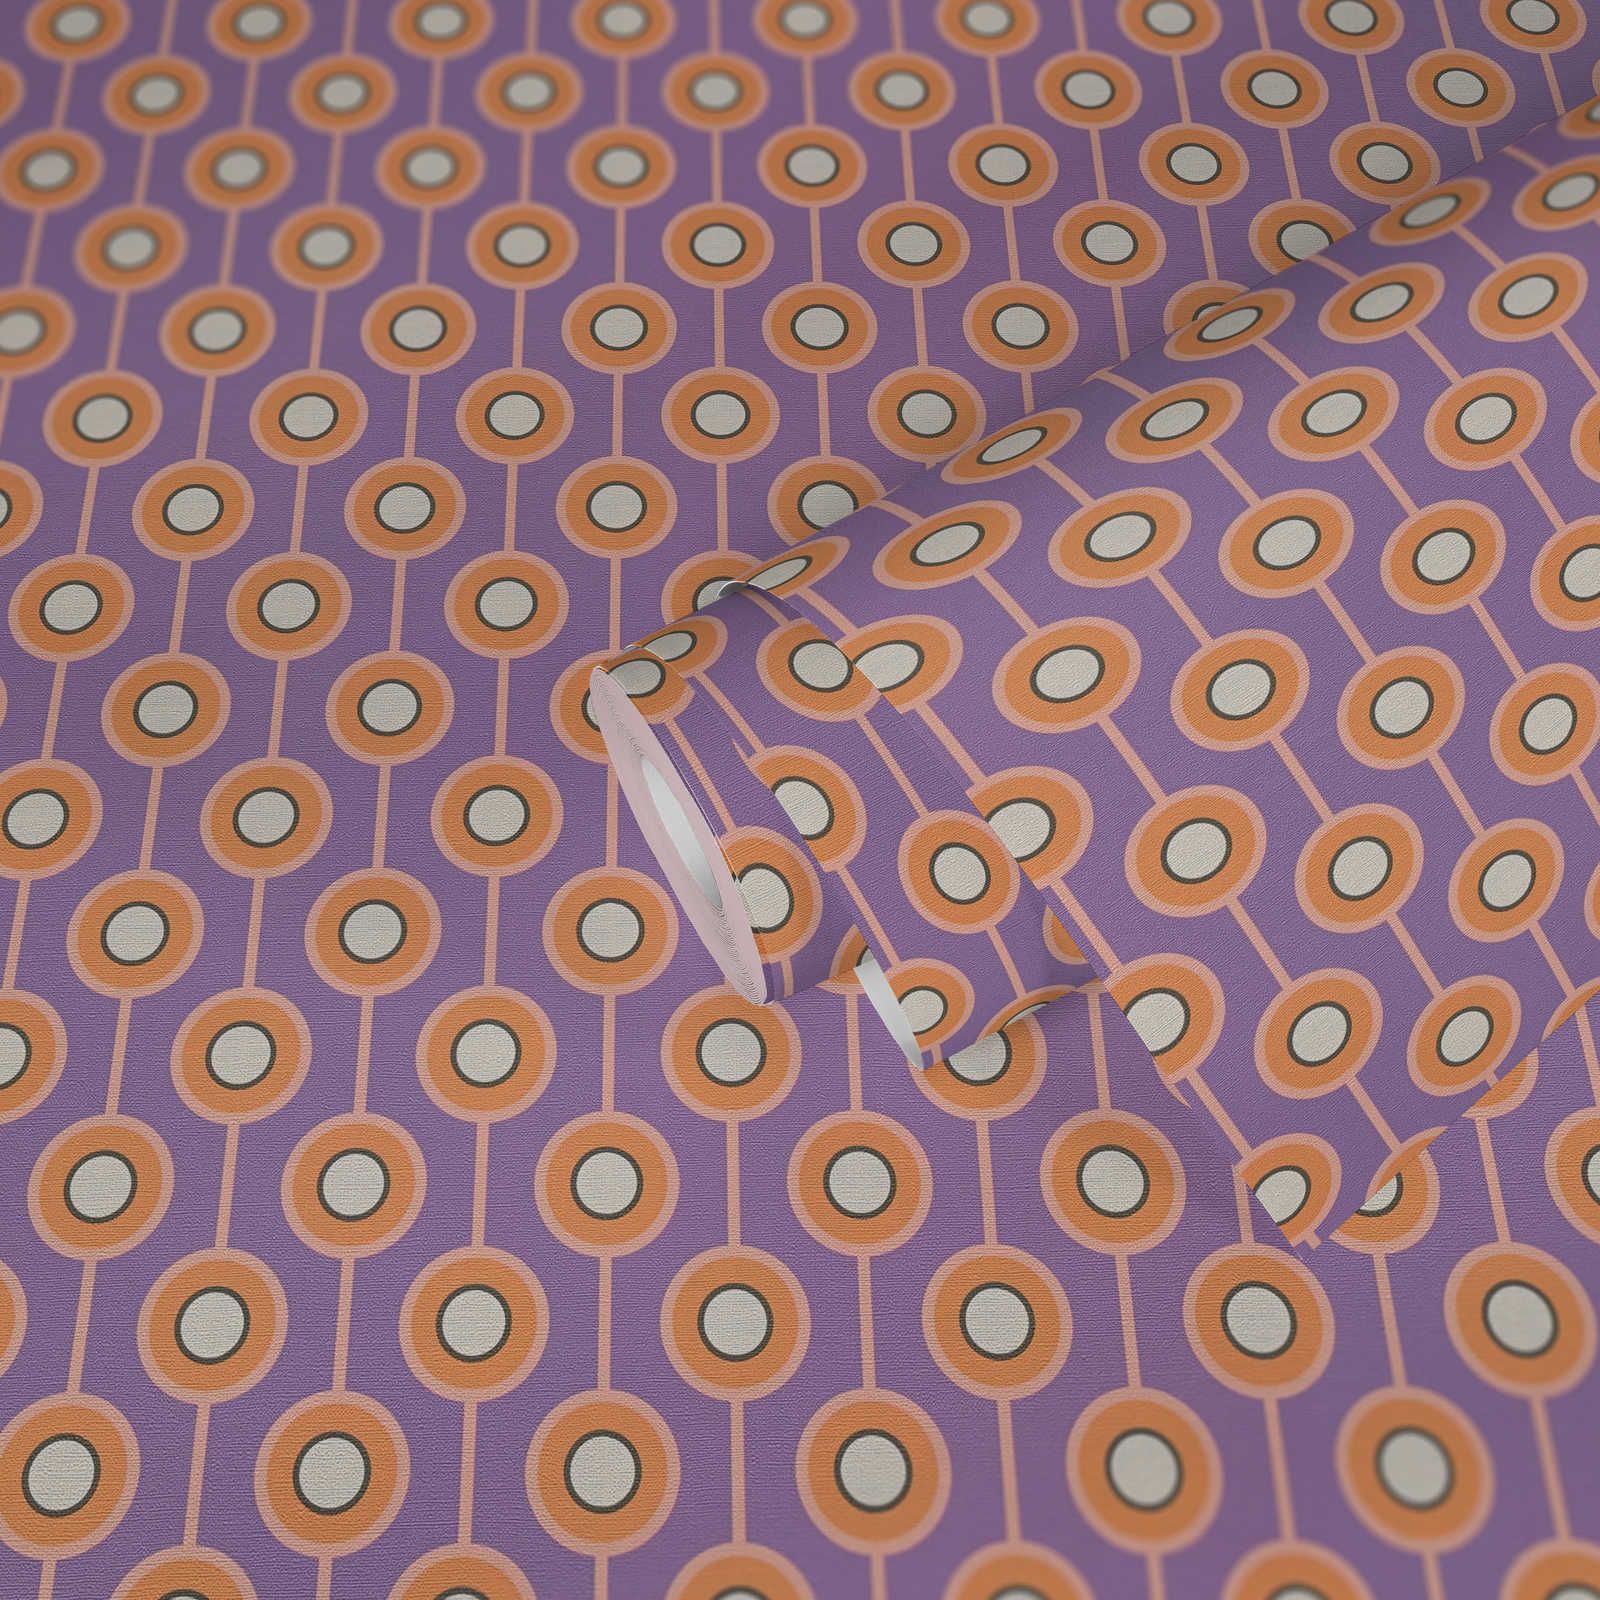             Papel pintado abstracto de círculos en tejido-no-tejido de estilo retro - morado, naranja, beige
        